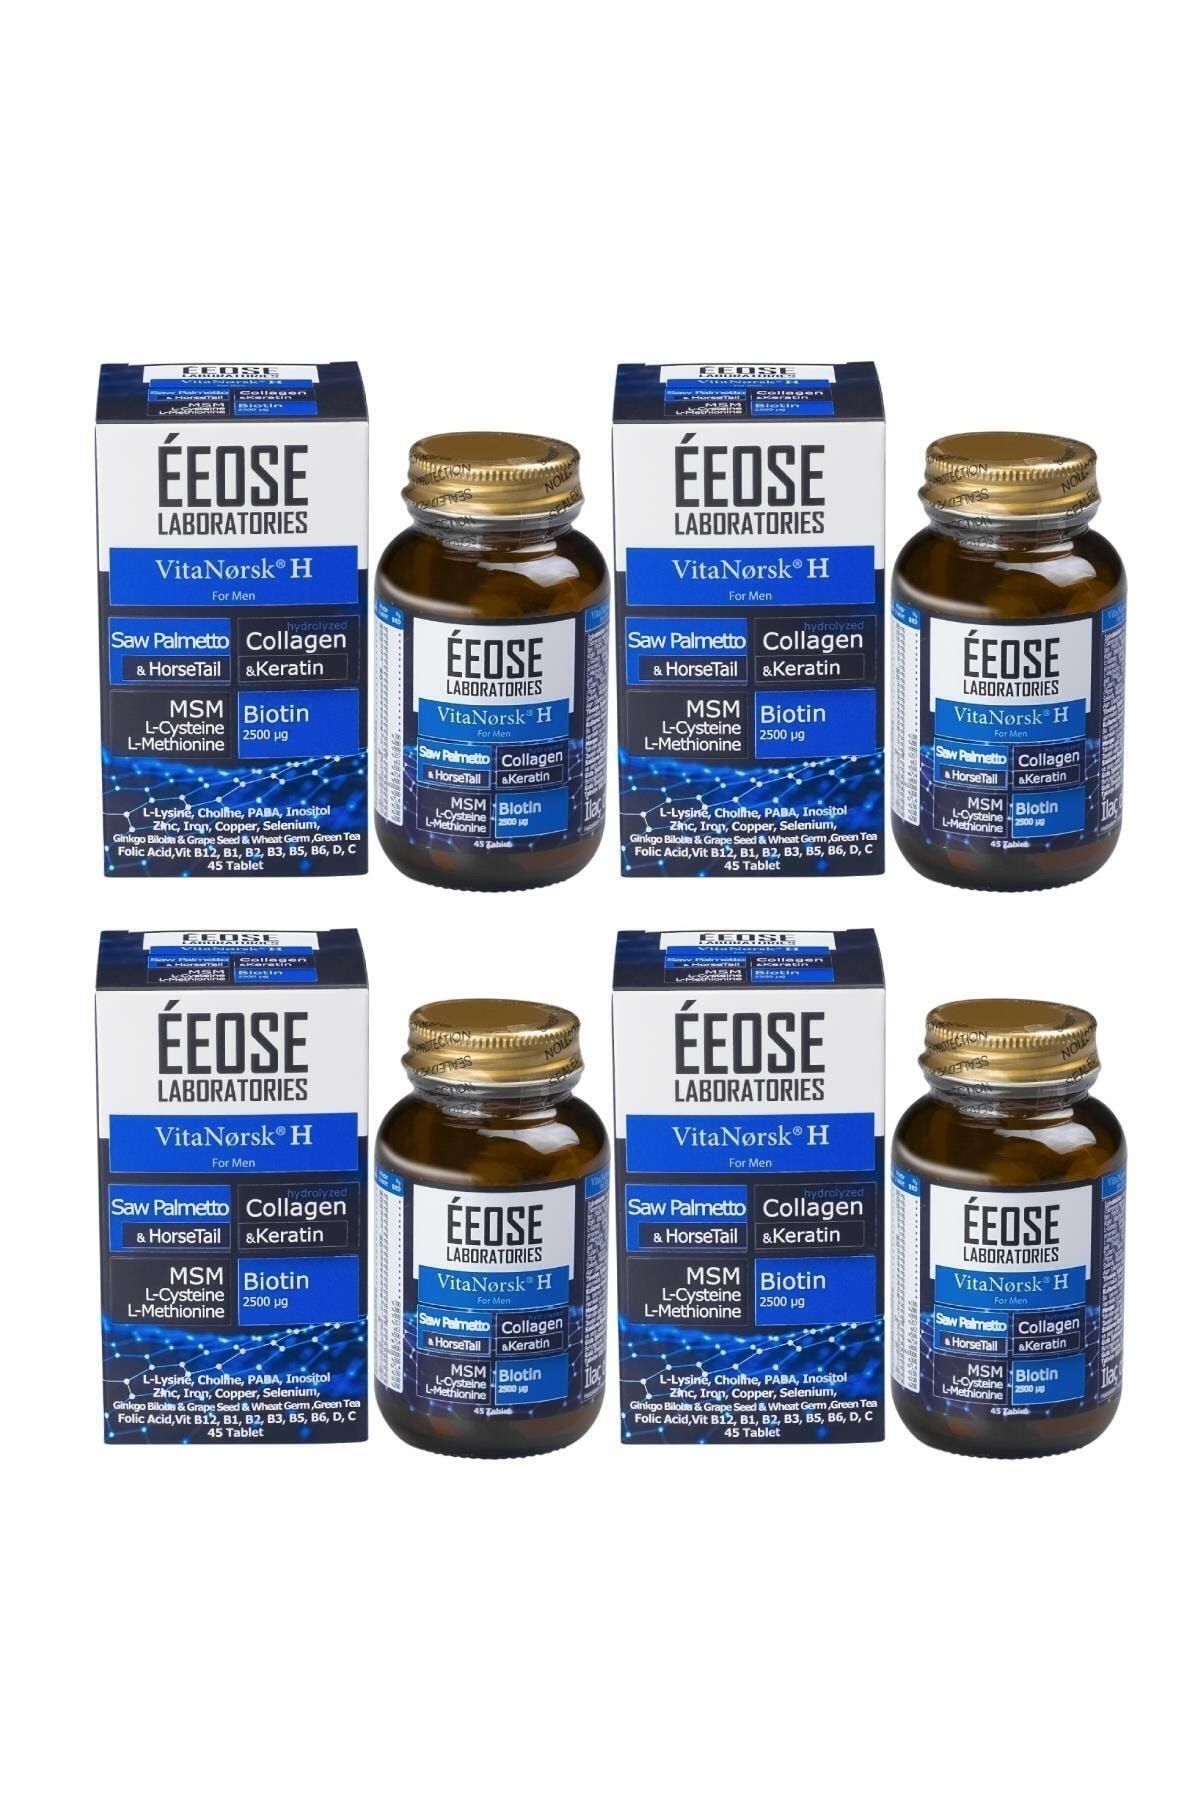 Eeose Vitanorsk H For Men (saç Dökülmesine Karşı, 45 Tablet) - 4 Adet